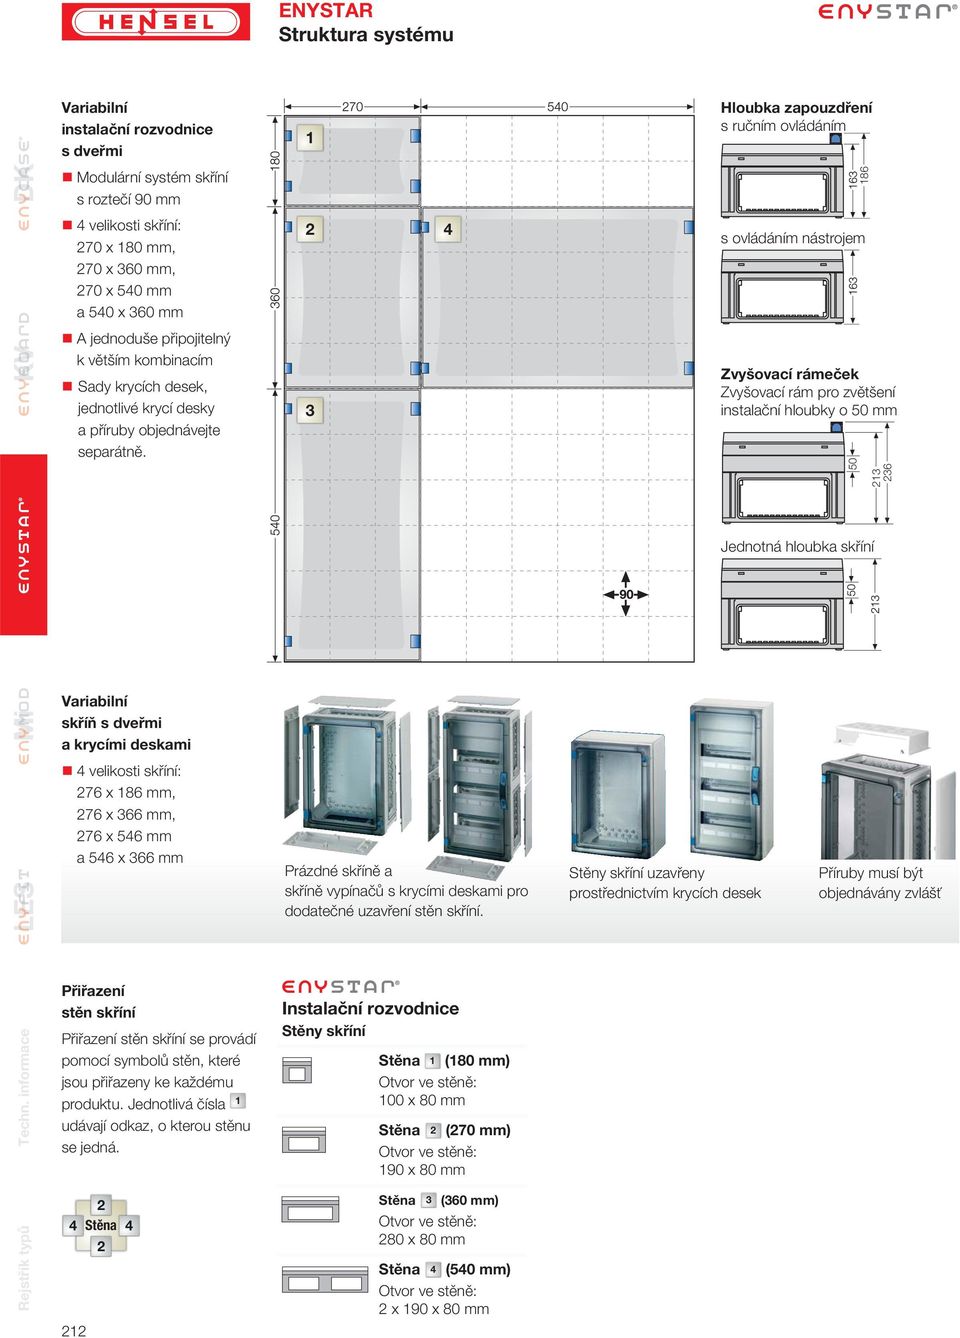 Variabilní skříň s dveřmi a krycími deskami 4 velikosti skříní: 276 x 186 mm, 276 x 366 mm, 276 x 546 mm a 546 x 366 mm 2 3 Prázdné skříně a skříně vypínačů s krycími deskami pro dodatečné uzavření